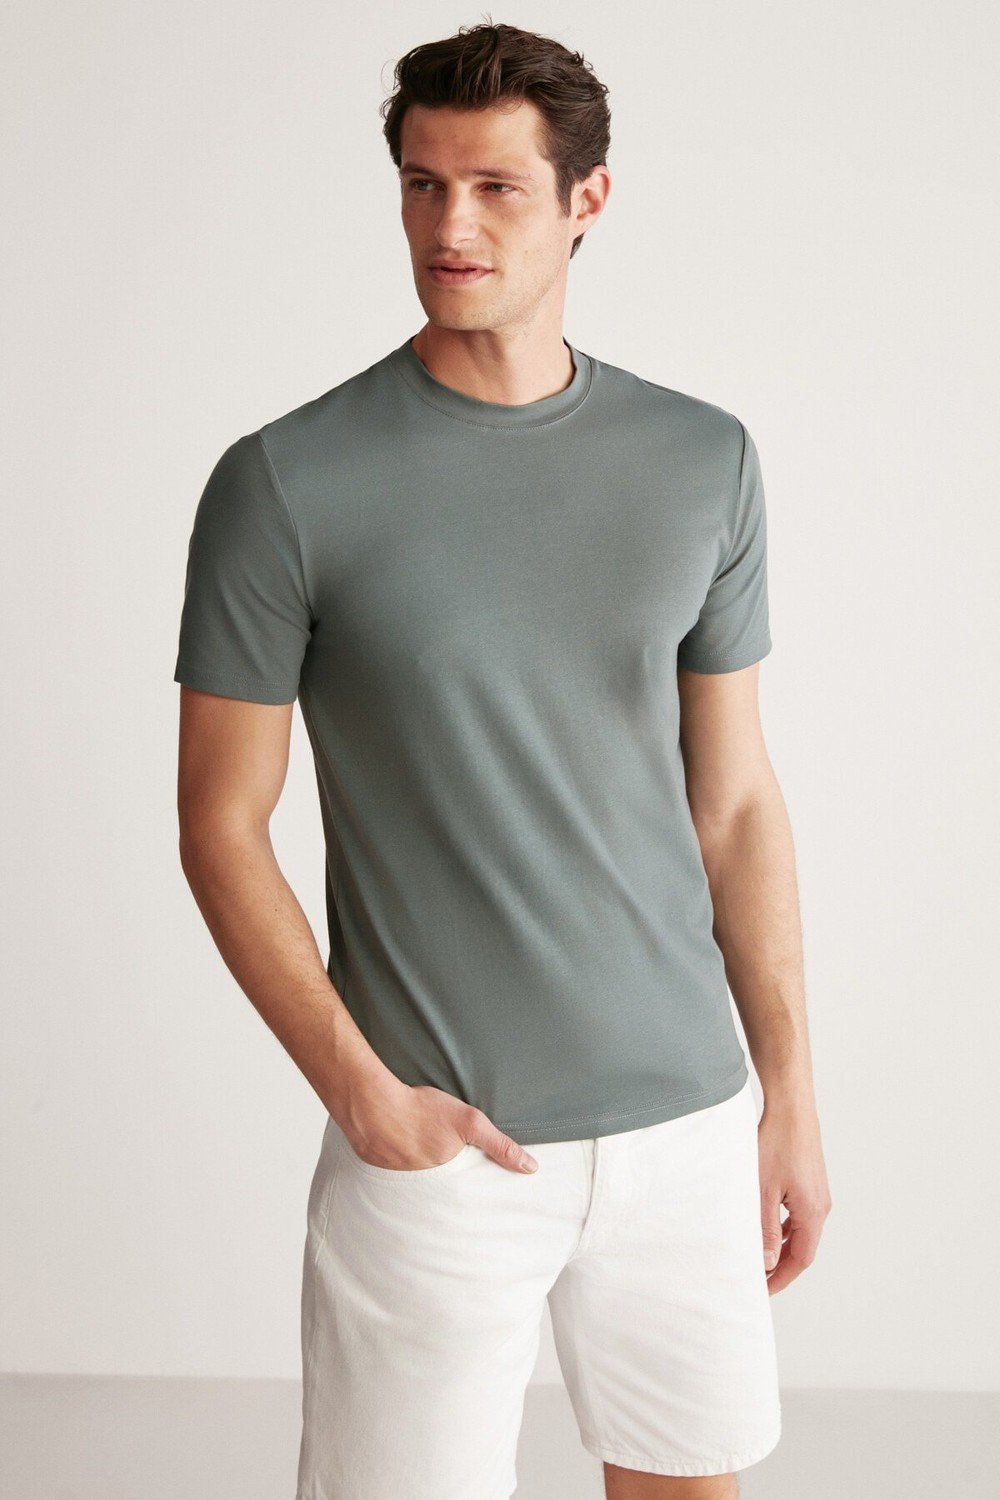 GRIMELANGE T-Shirt - Green - Slim fit